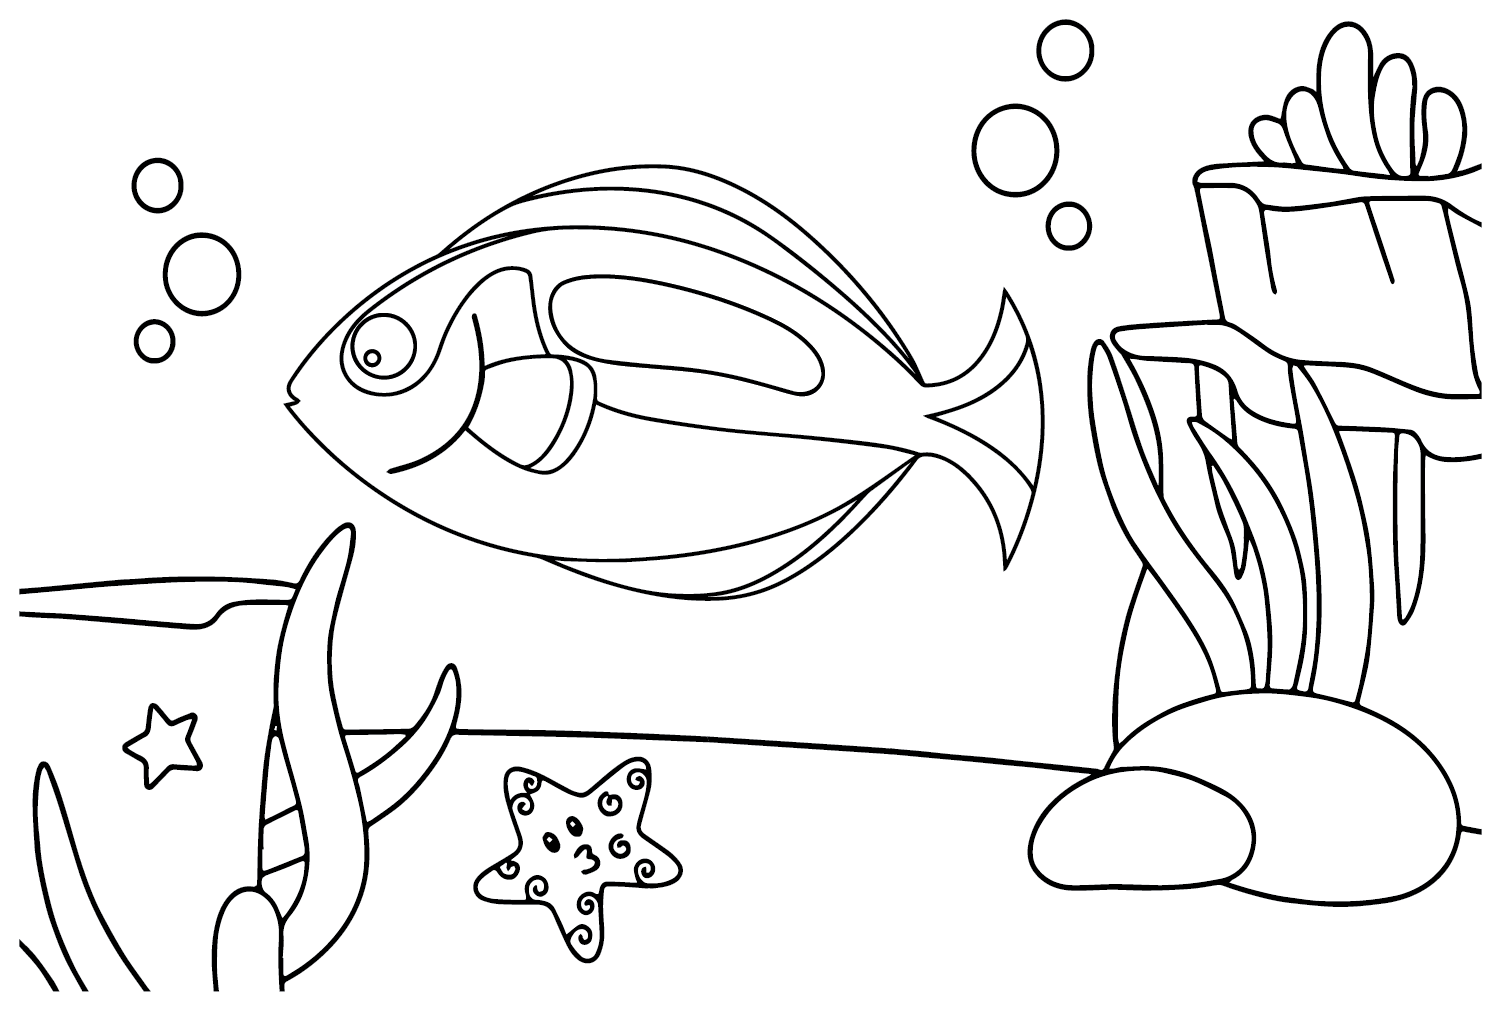 رسمة جميلة لسمكة ونجم البحر